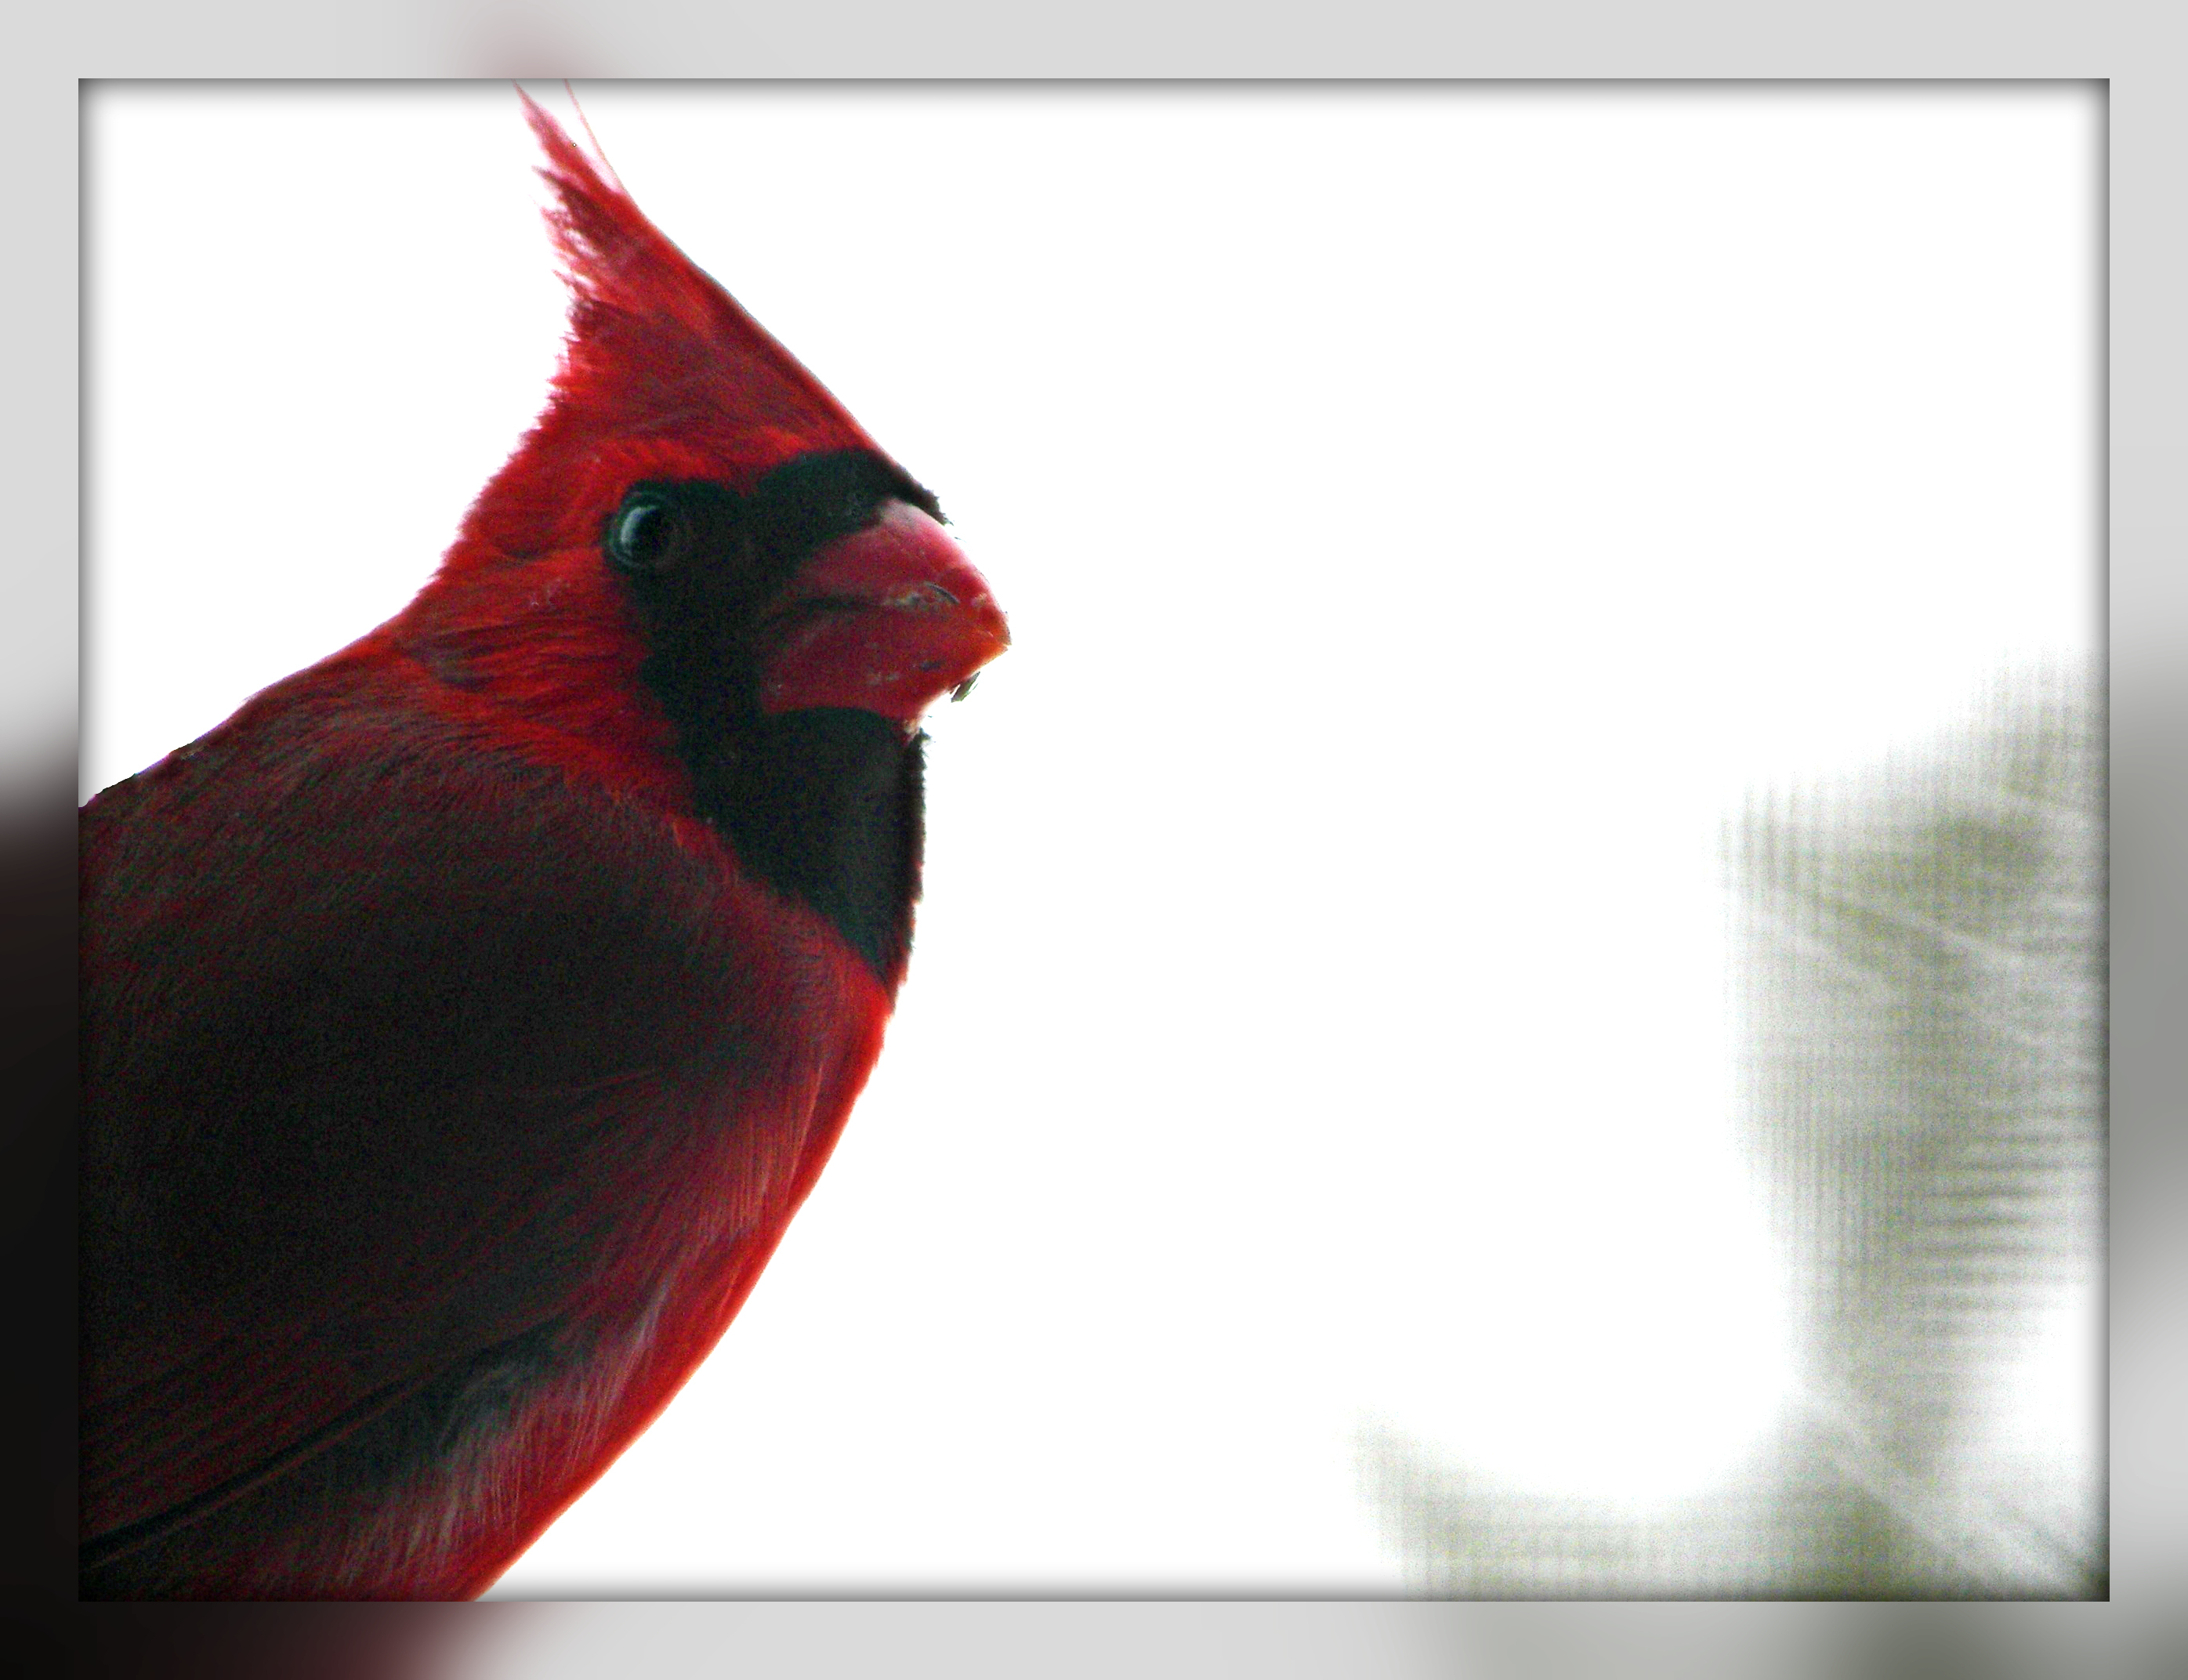 birds, Northern Cardinal - desktop wallpaper